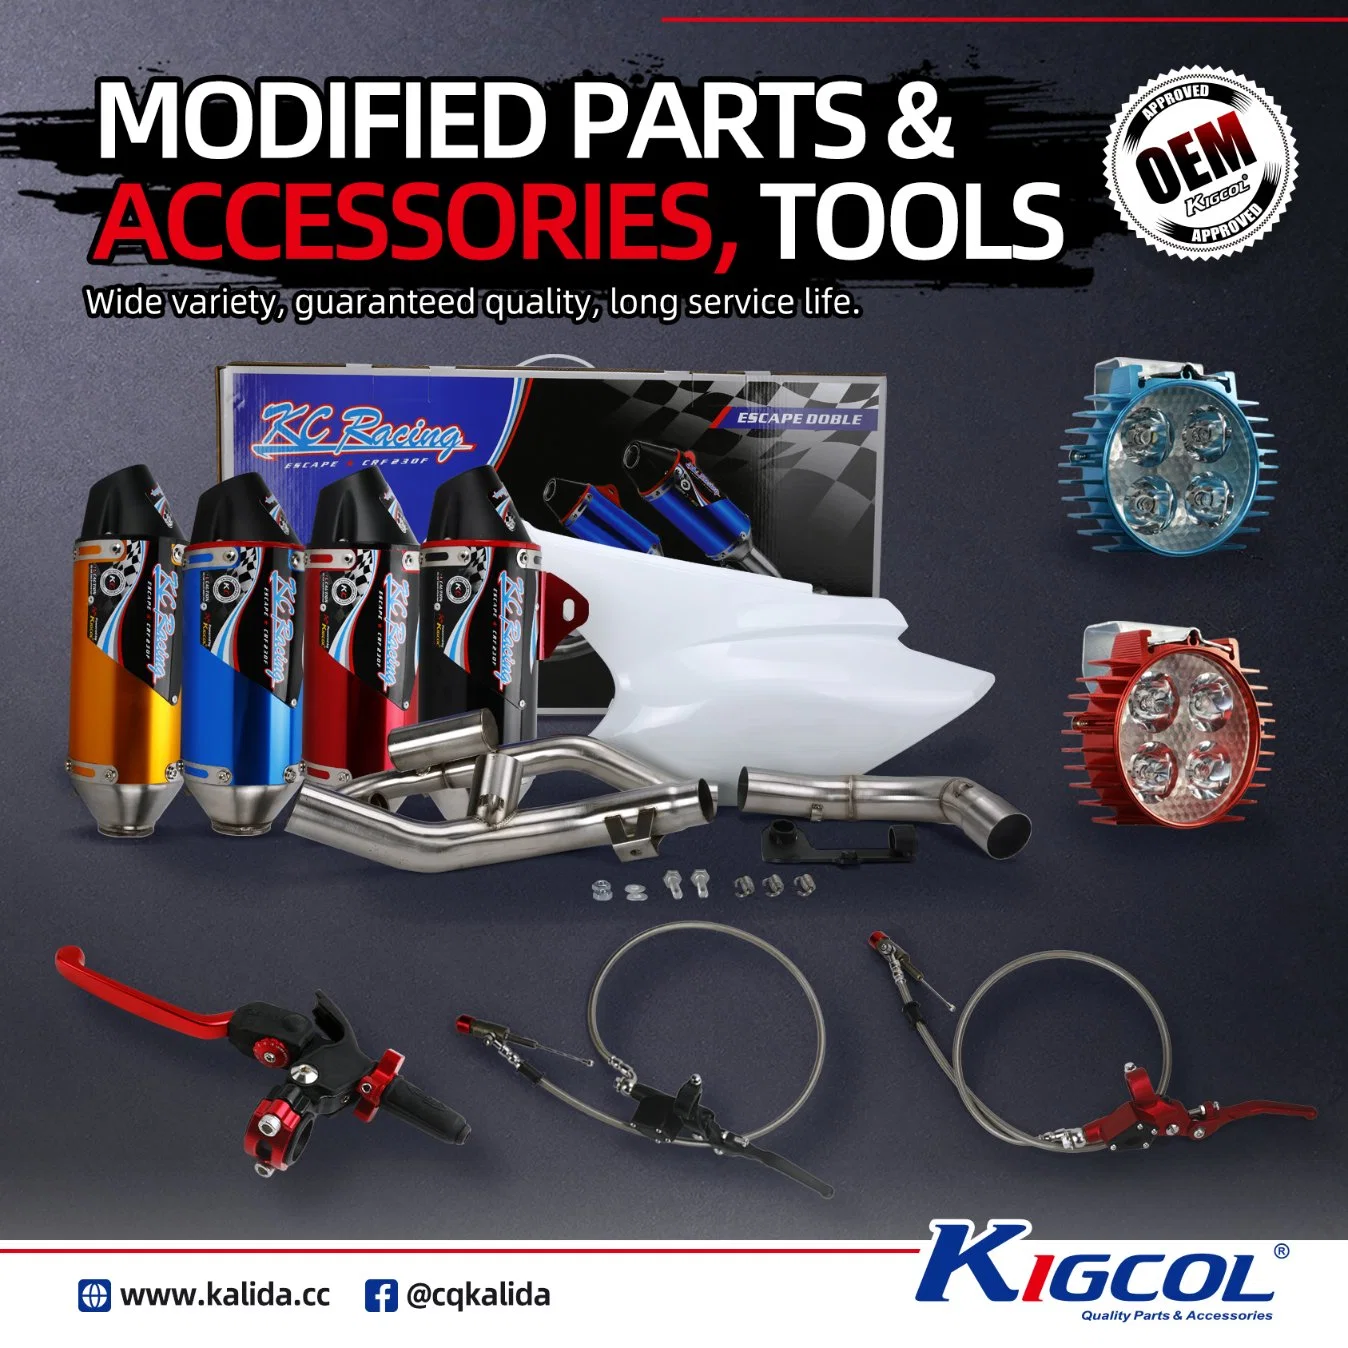 Kigcol OEM qualité Accessoires de pièces de moto convient pour Honda/Italika/YAMAHA/Suzuki/Bajaj/Zs/Lifa/Loncin